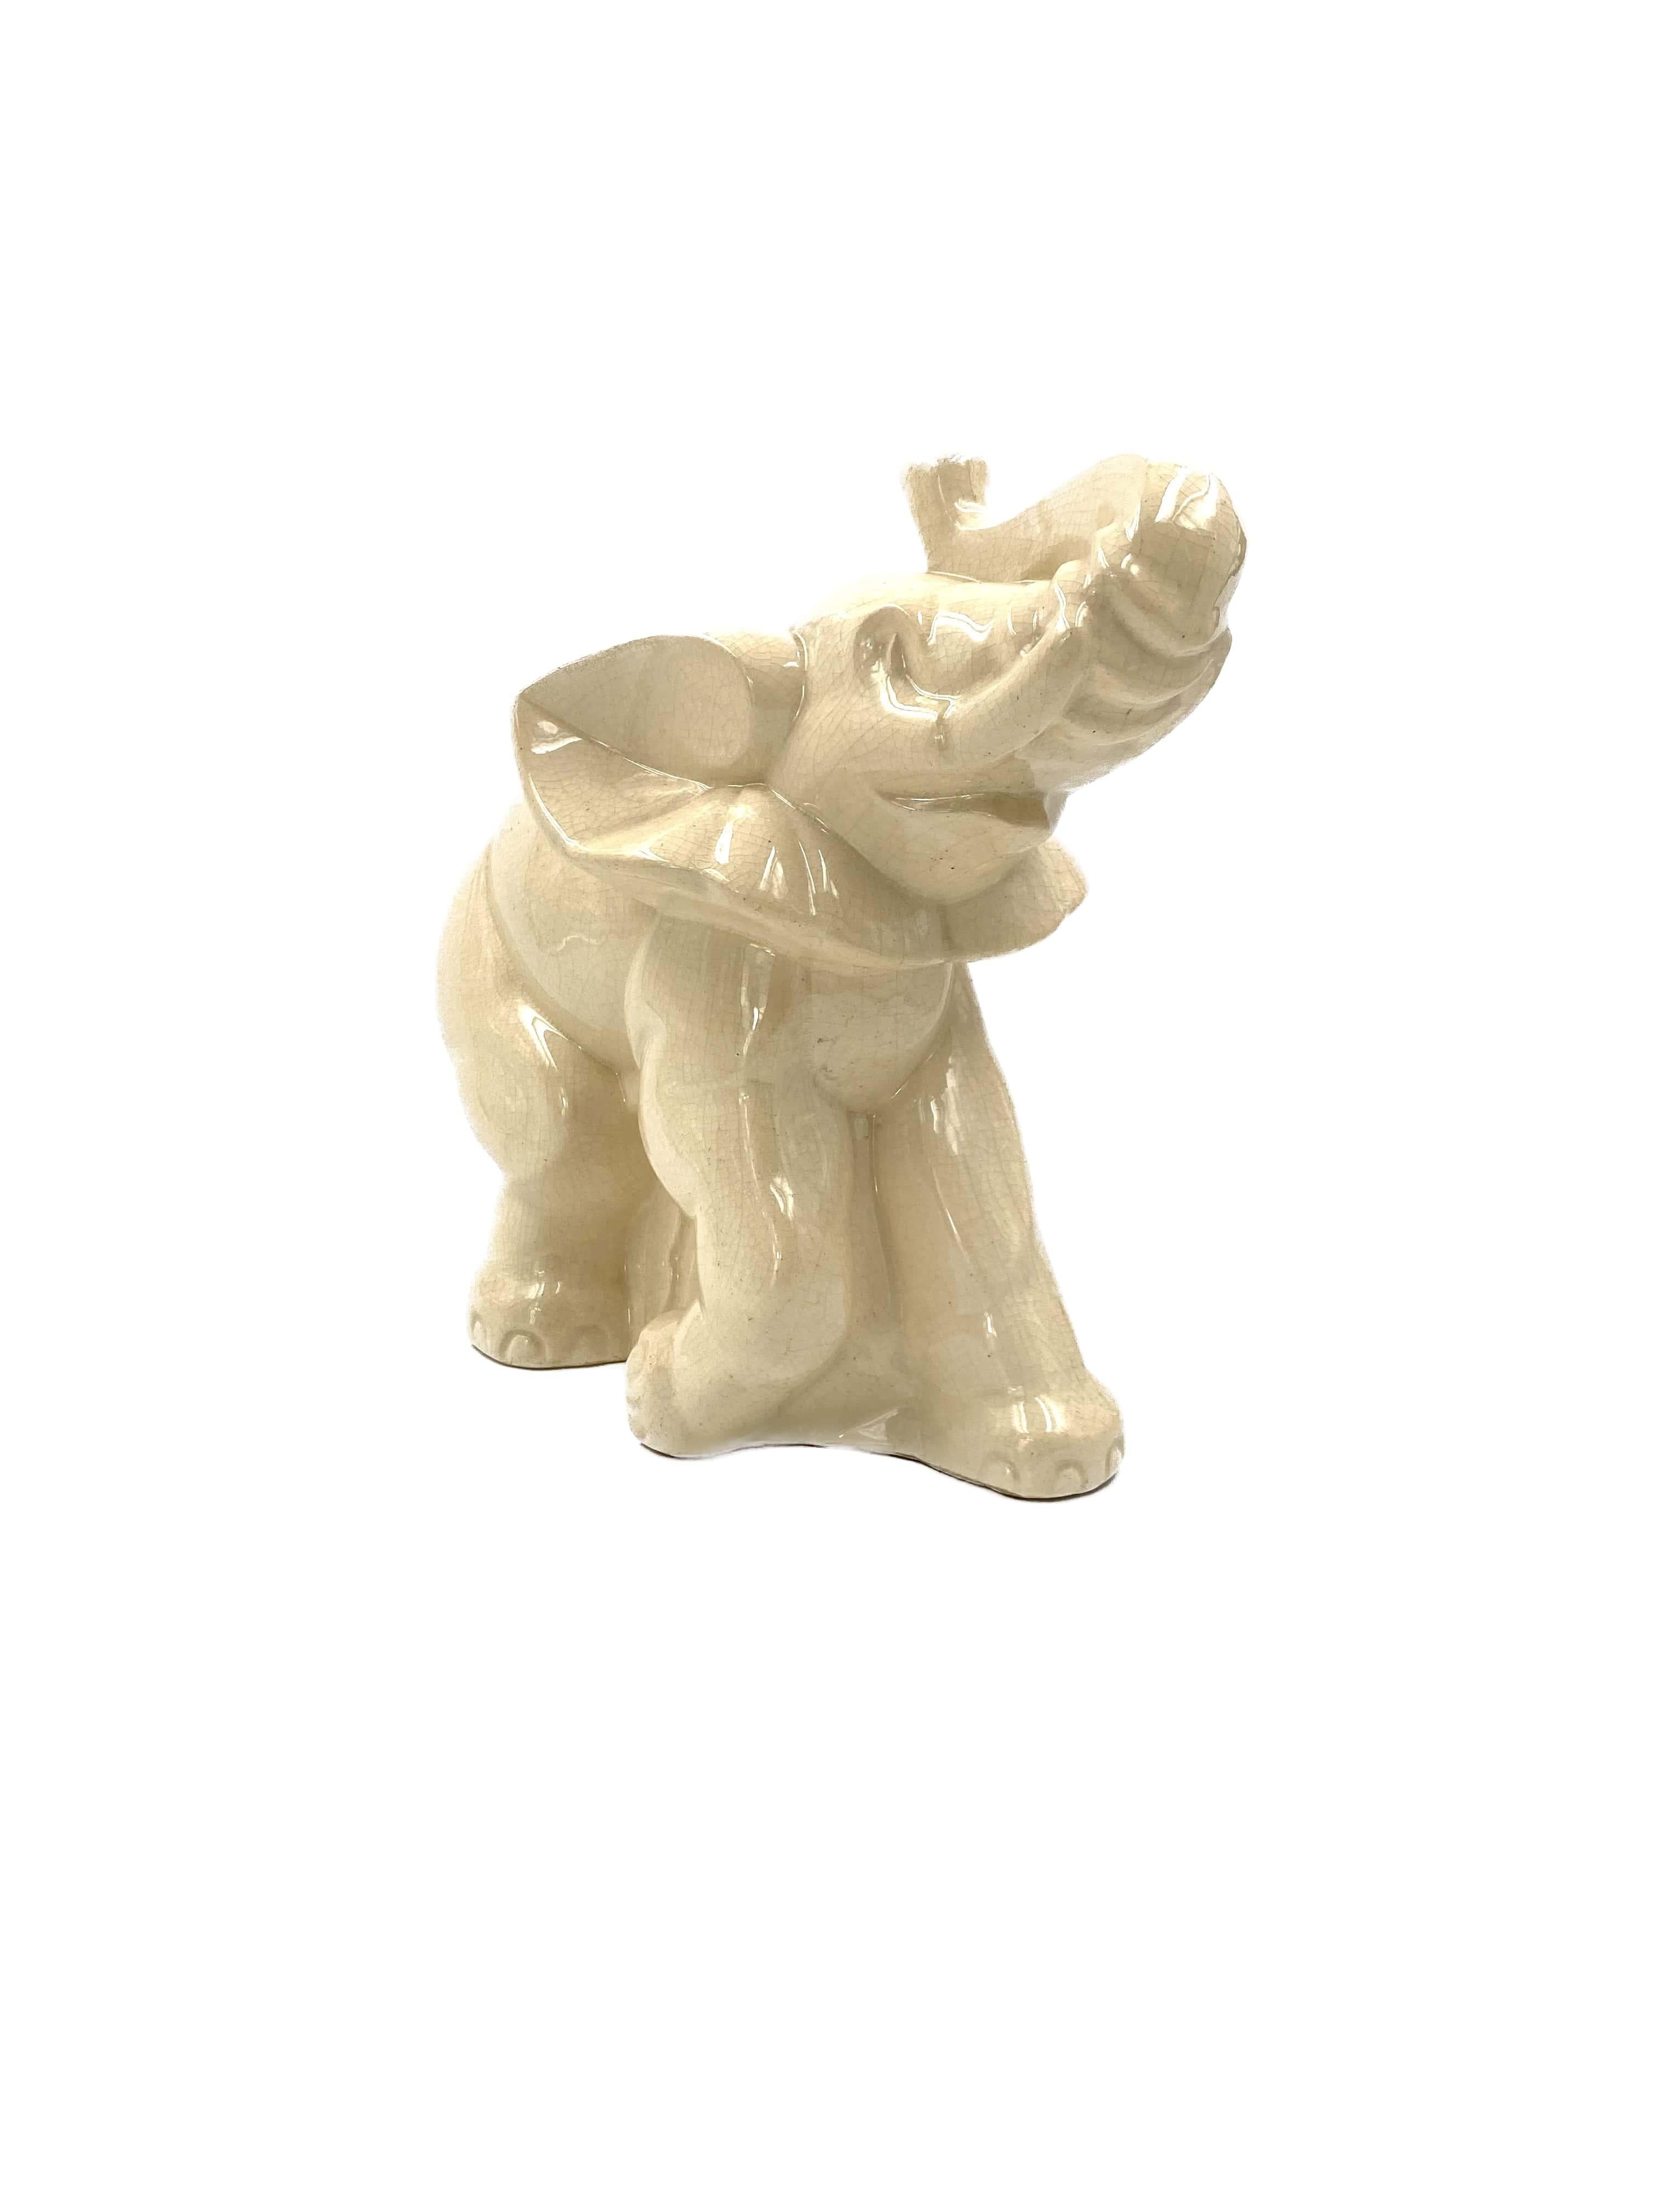 antique ivory elephant figurines price